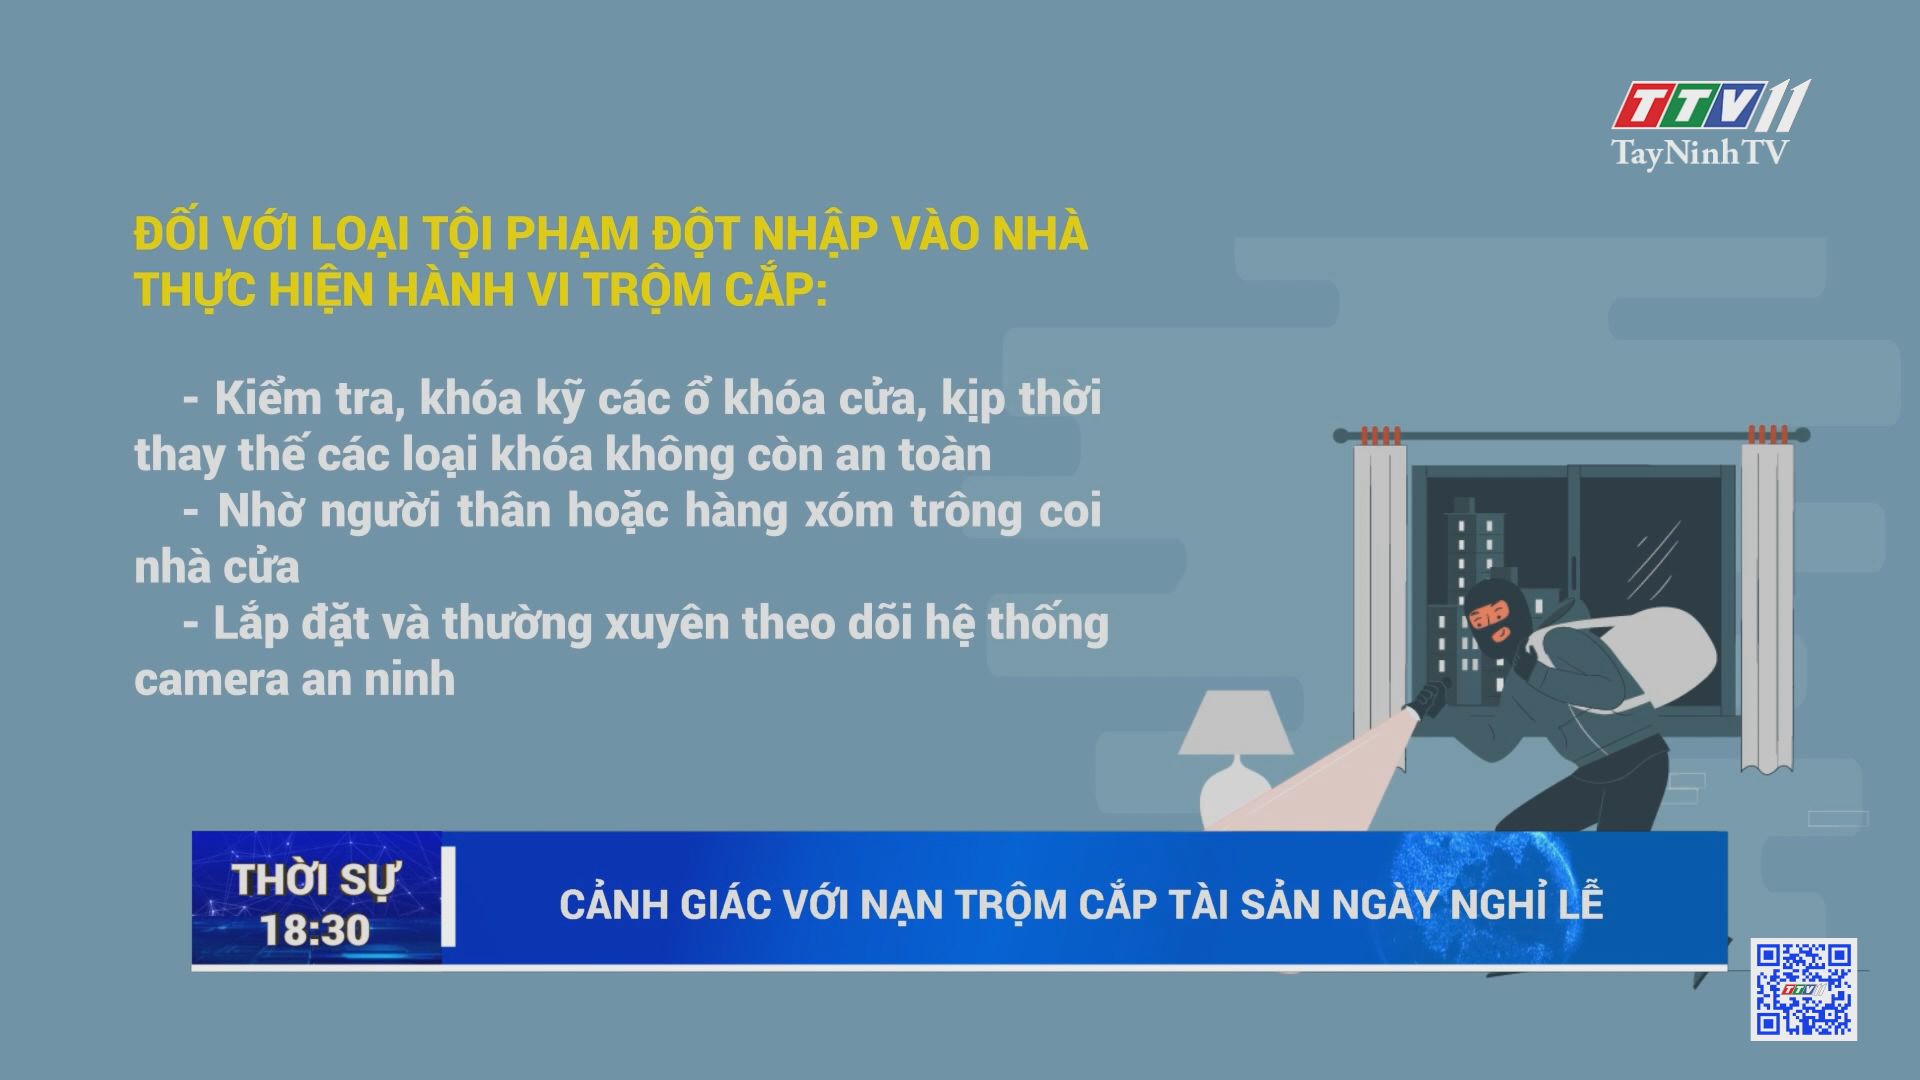 Cảnh giác với nạn t.rộ.m cắ.p tài sản ngày nghỉ lễ | TayNinhTV